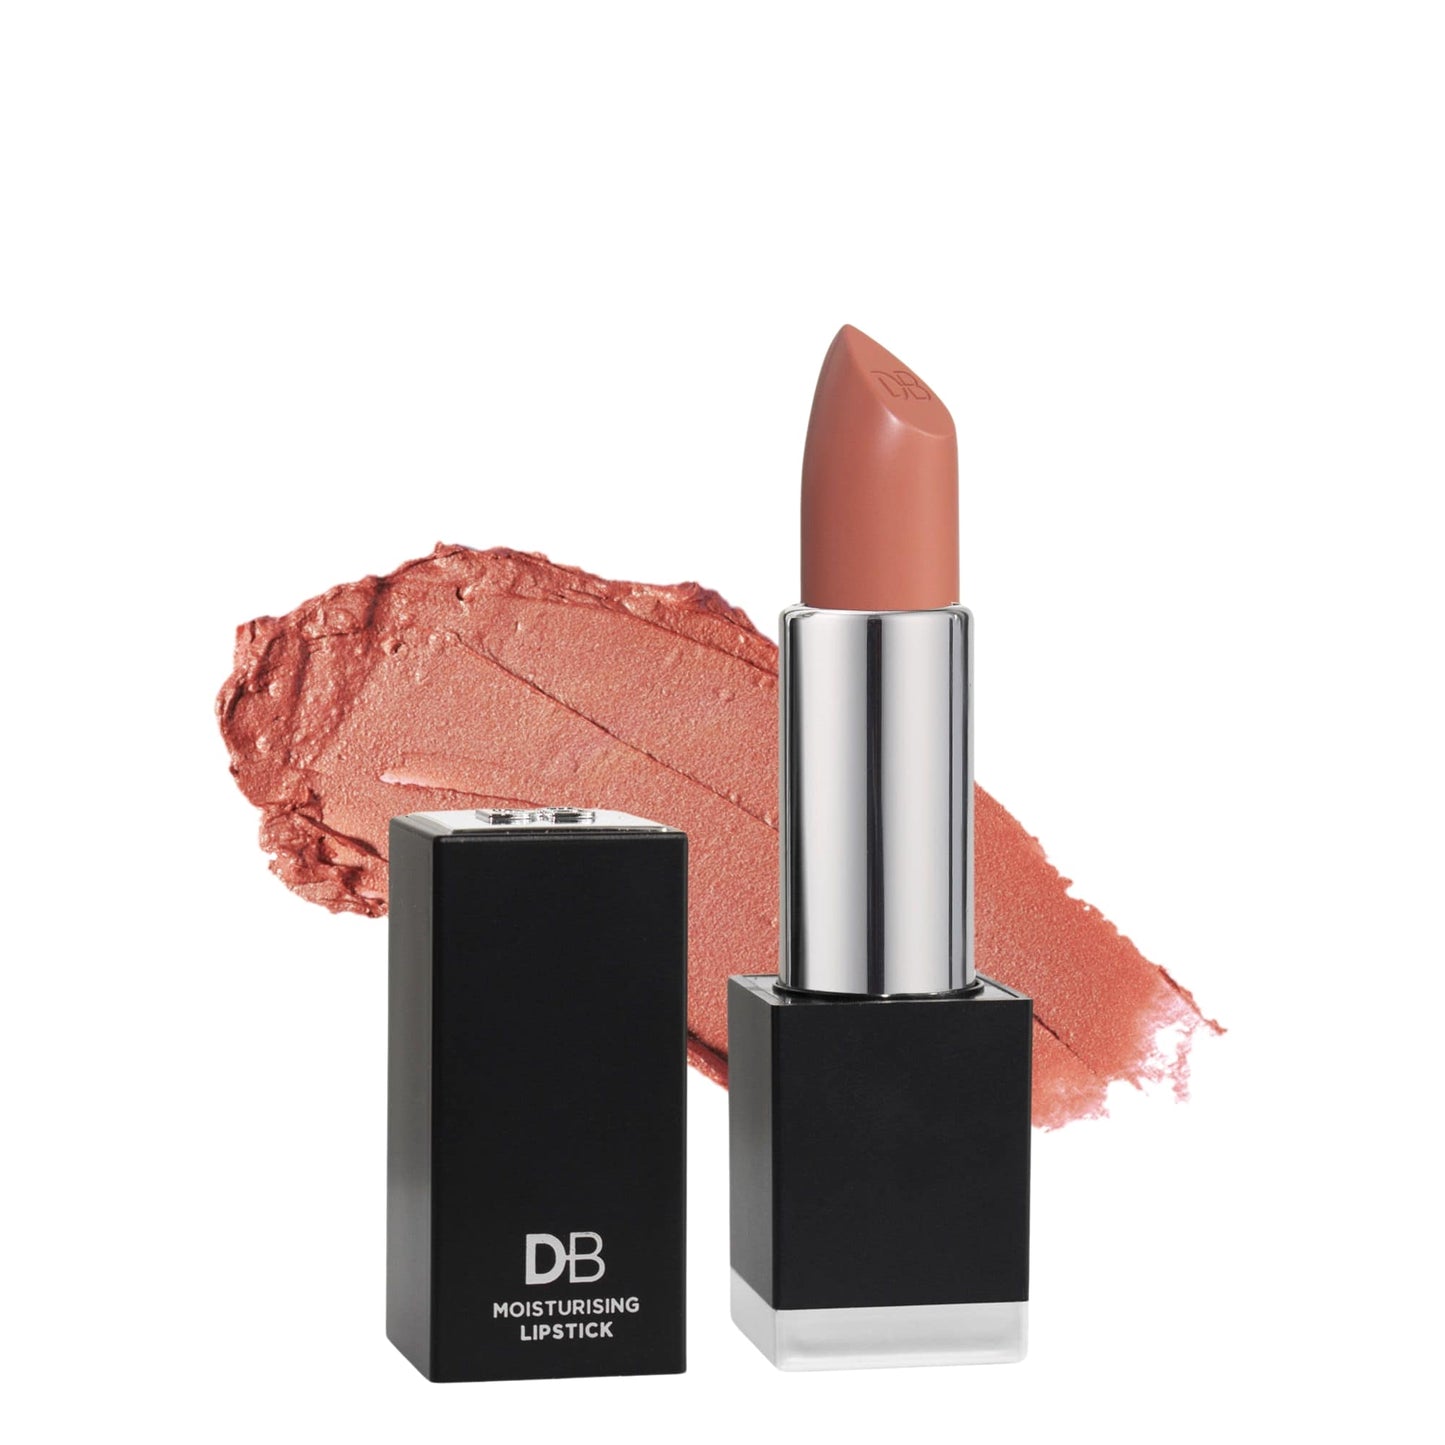 Lush Moisturising Lipstick (Blush Mauve) | DB Cosmetics | Thumbnail